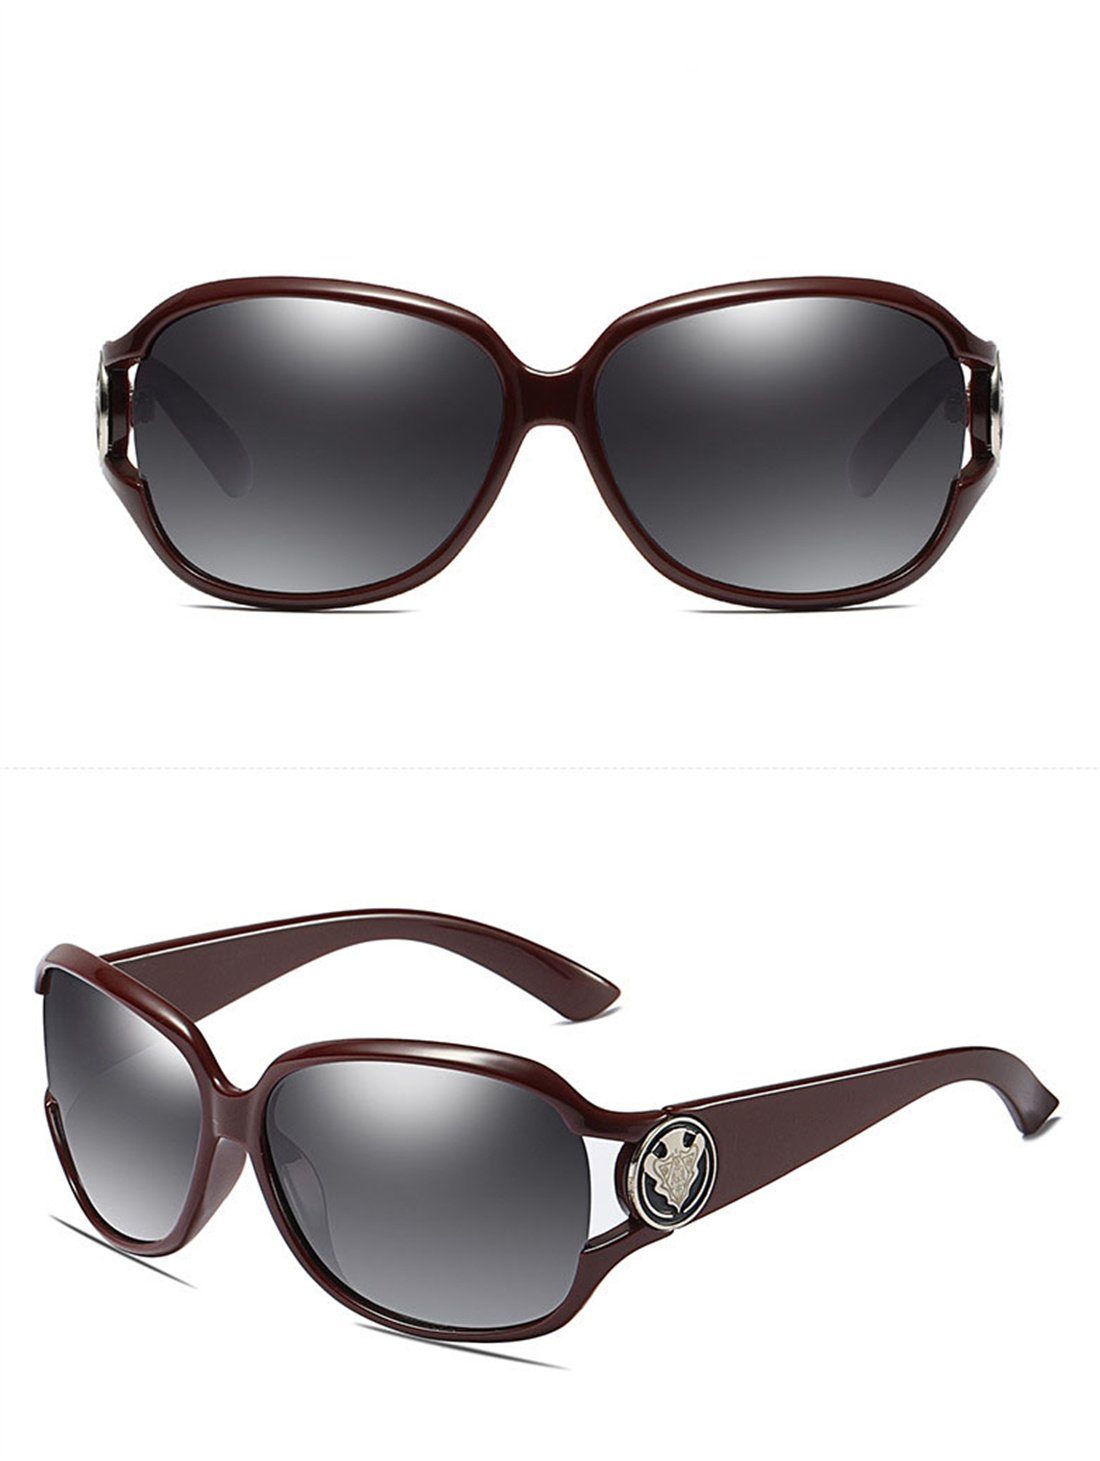 DÖRÖY für Frauen, Outdoor-Sonnenbrillen Sonnenbrillen Polarisierende Sonnenbrille